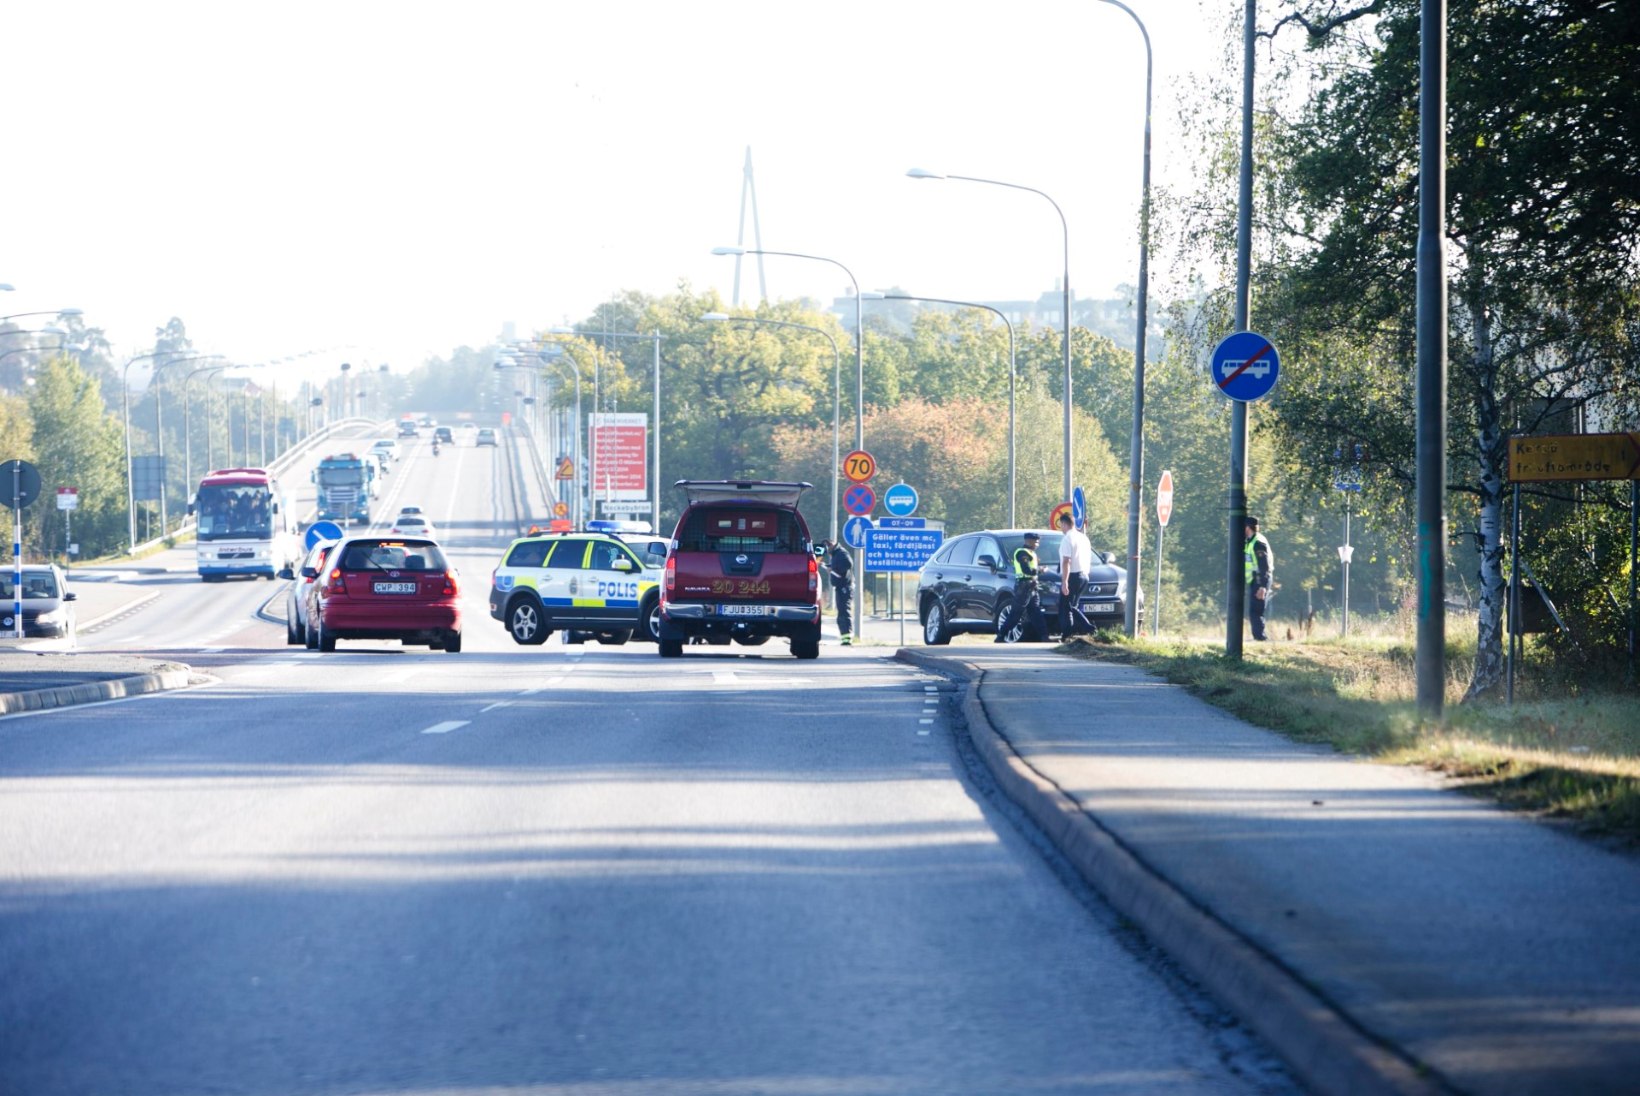 FOTOD: Rootsi kuningas sattus liiklusõnnetusse